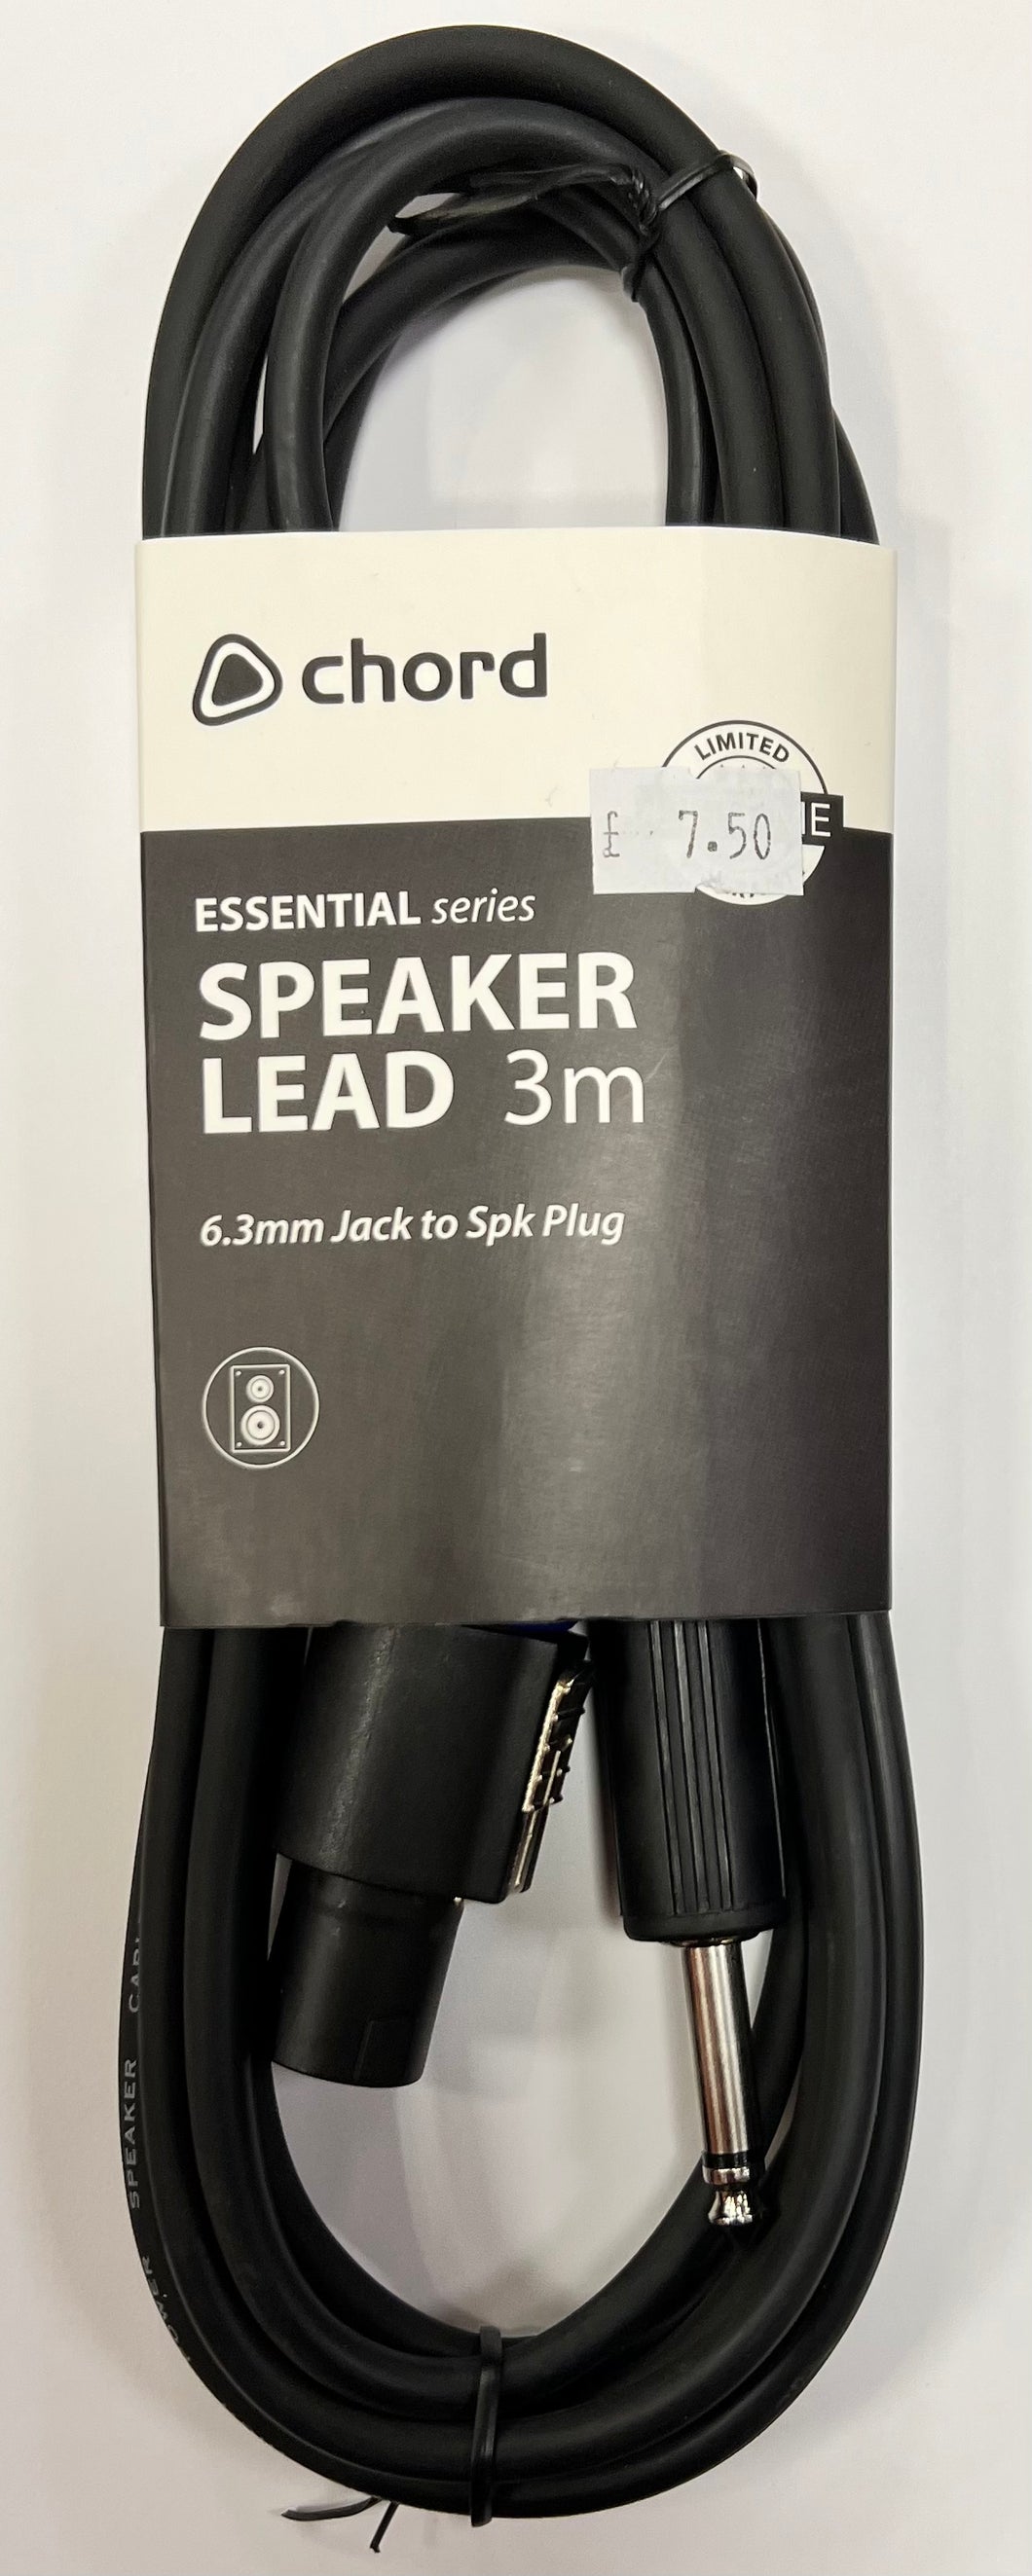 Chord Essential Speaker Plug - Jack Lead 3m